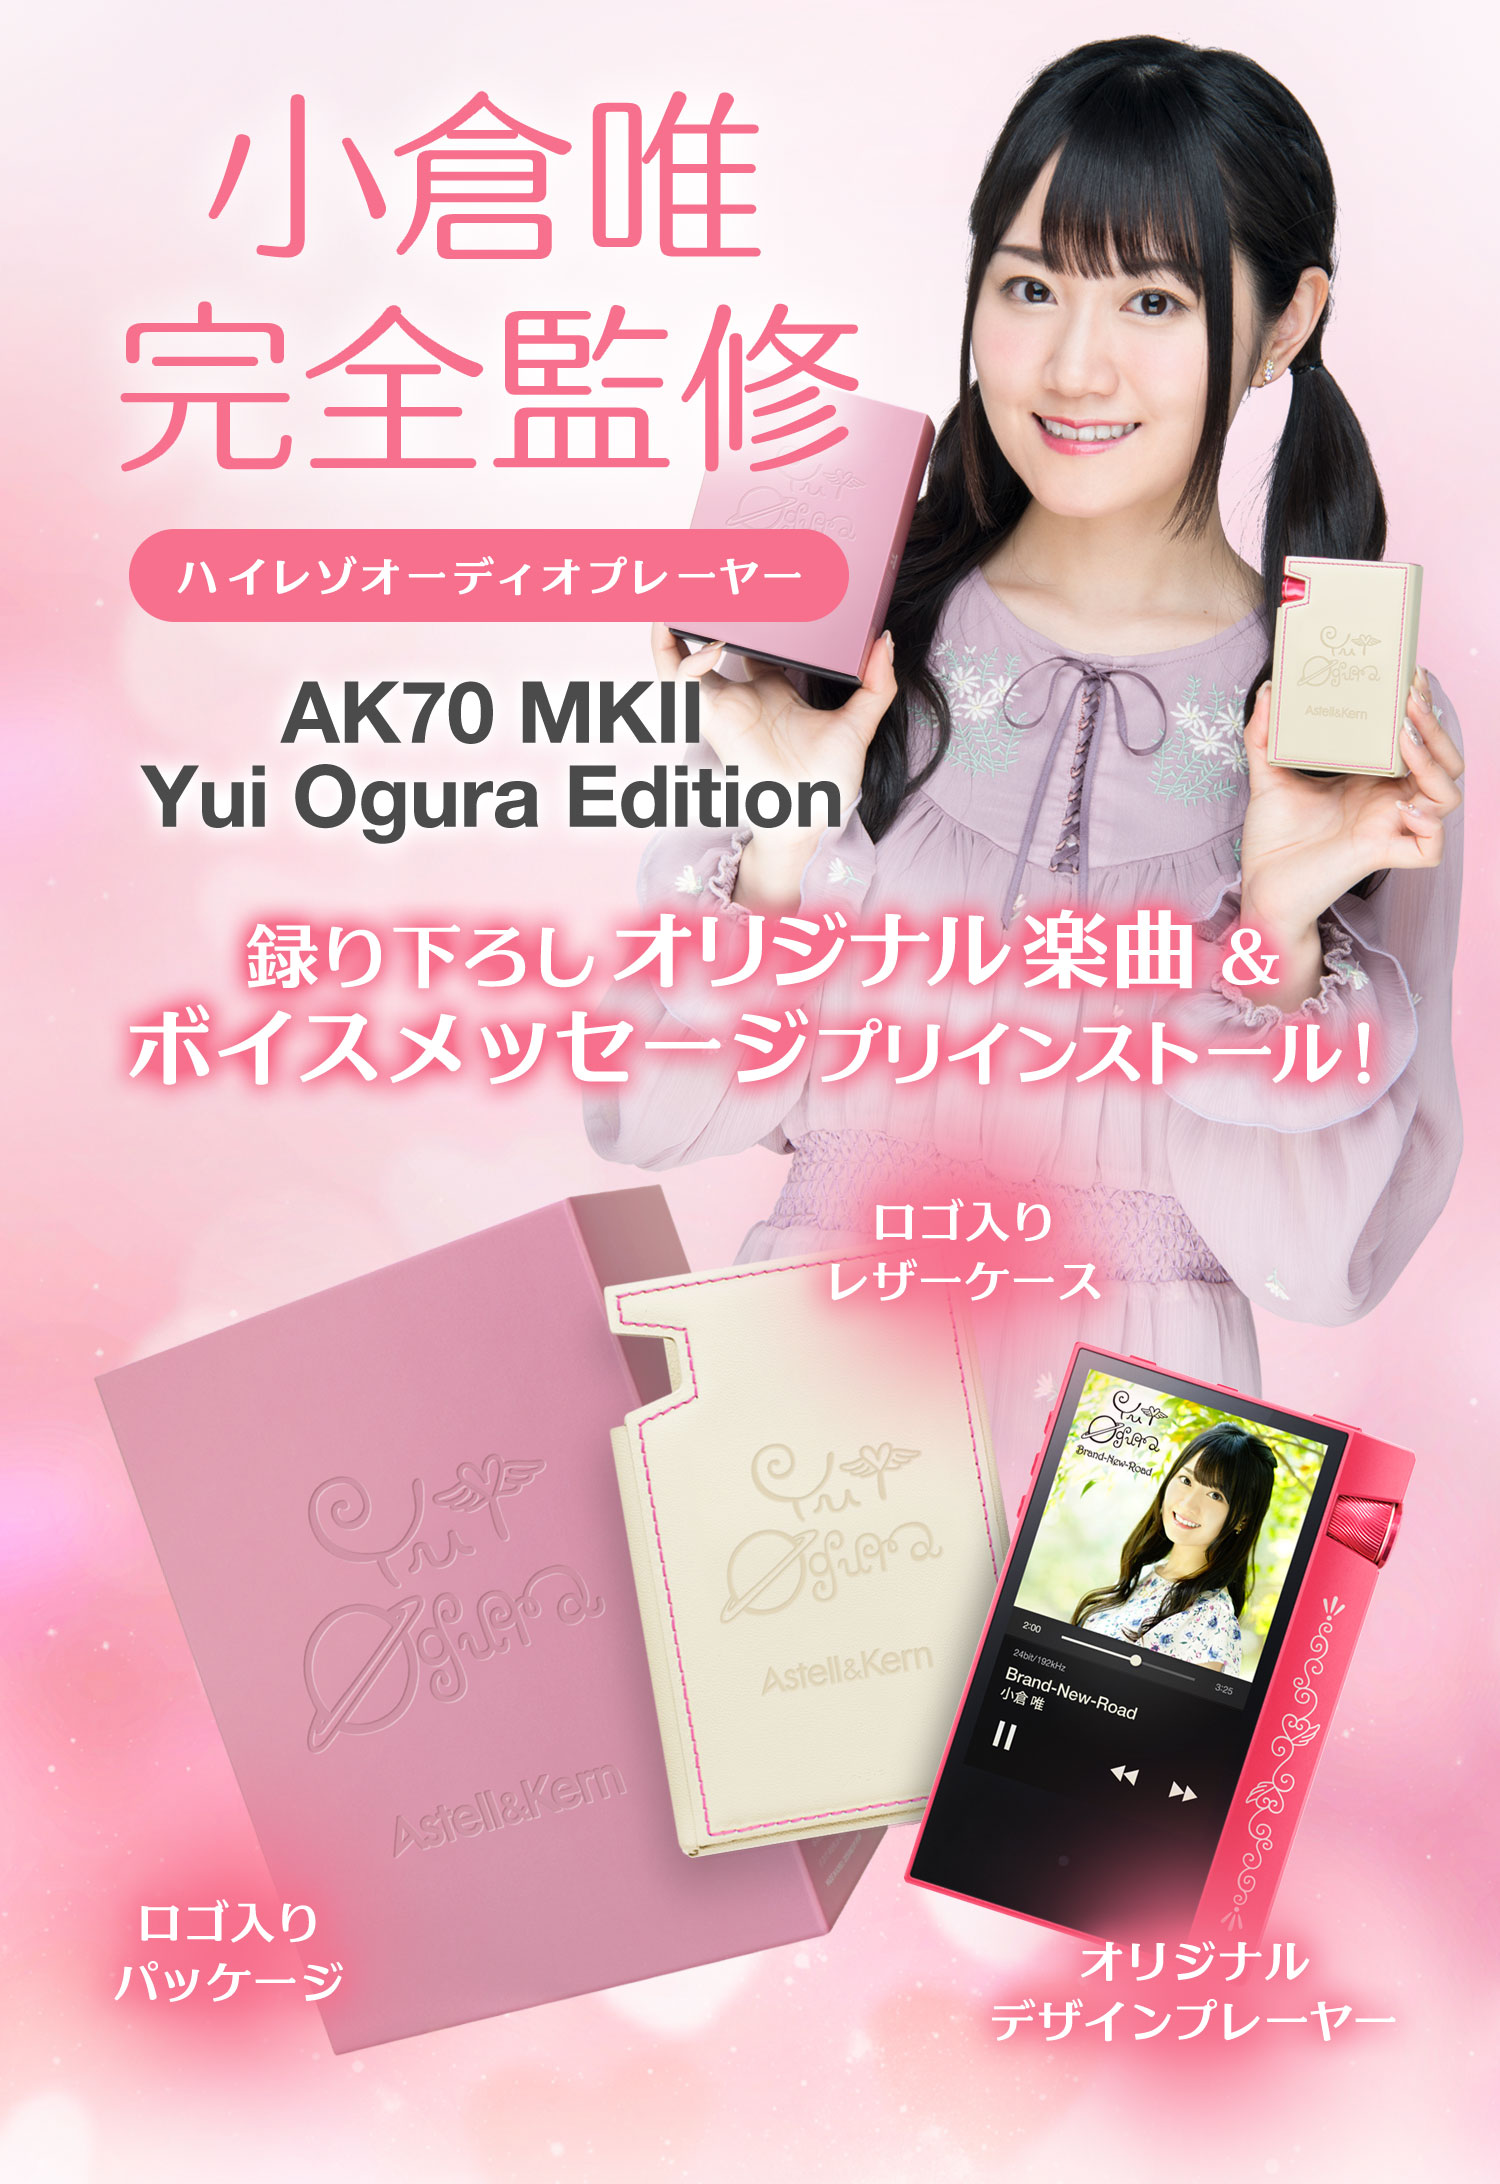 大人気商品 Astell&Kern Edition Ogura Yui MKII AK70 ポータブルプレーヤー